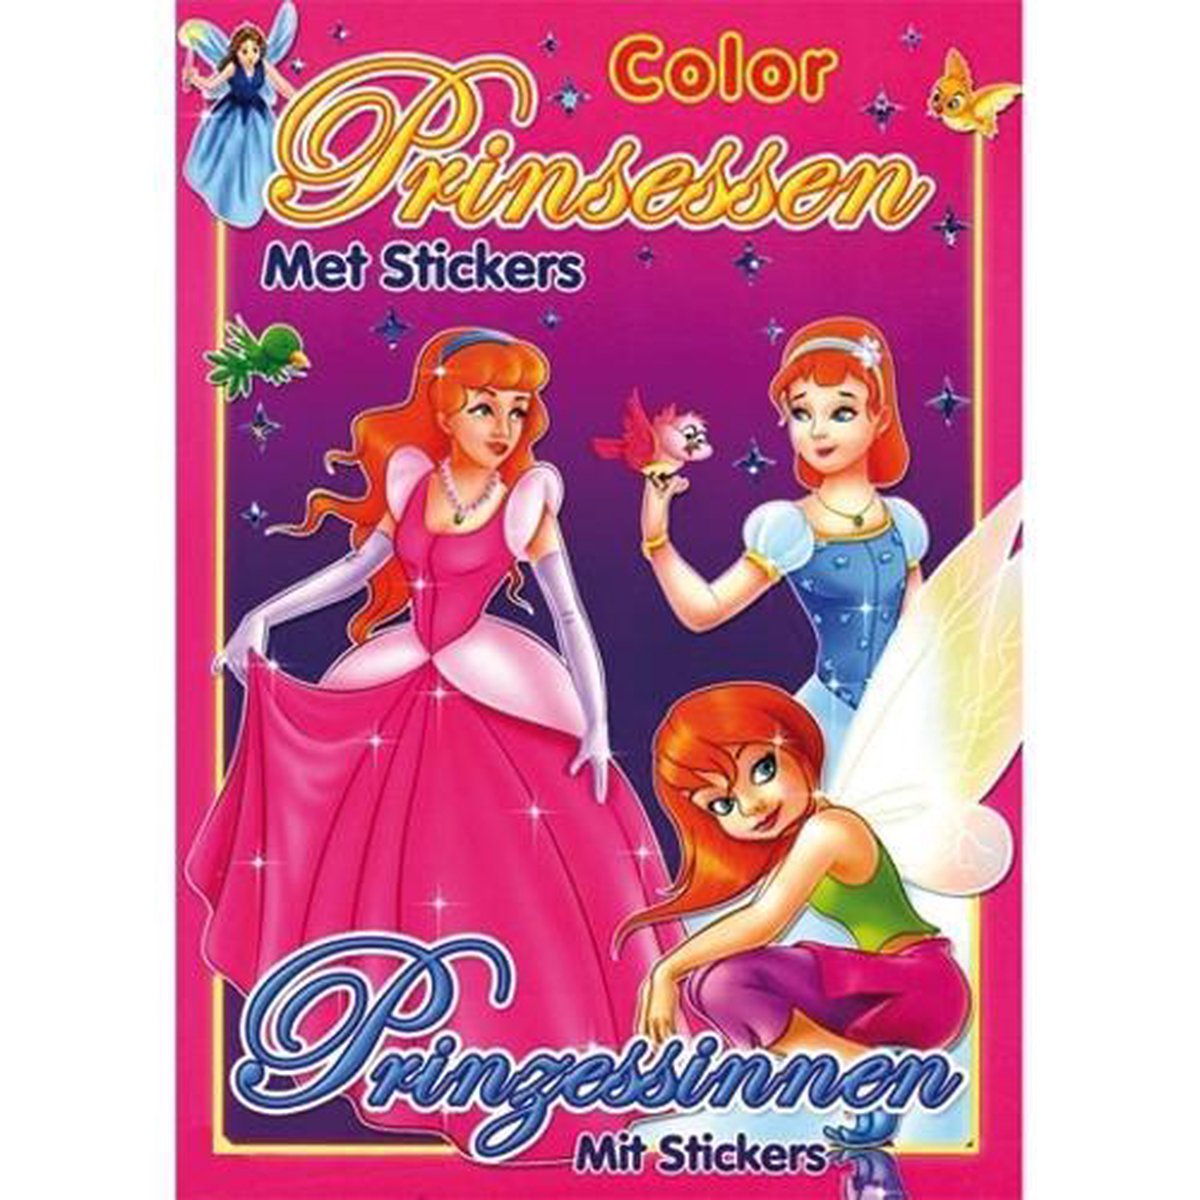 Color prinsesssen - met stickers